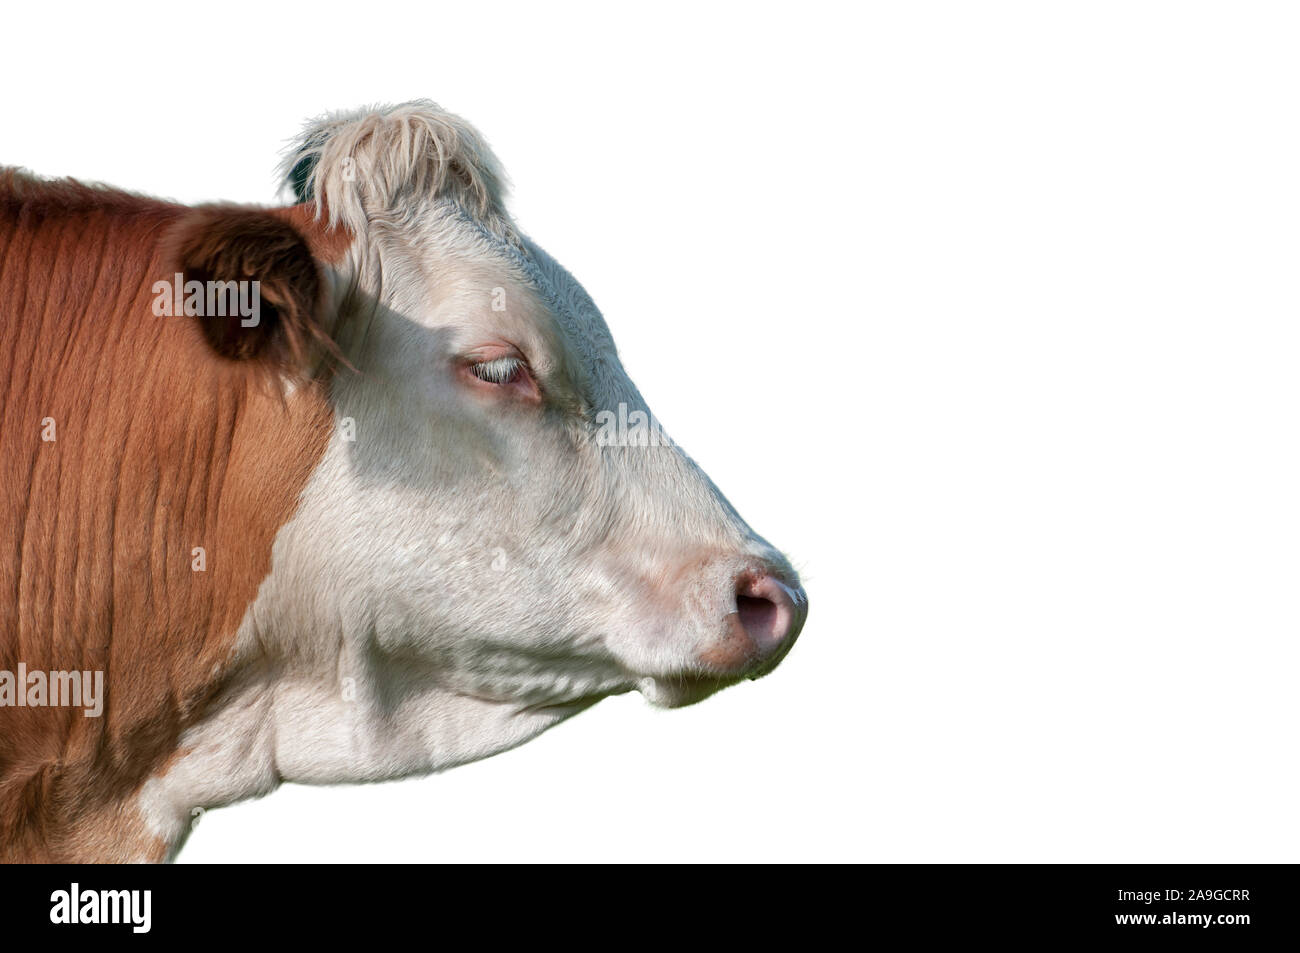 Kuh Gesicht Profil isloated auf Weiß Stockfoto